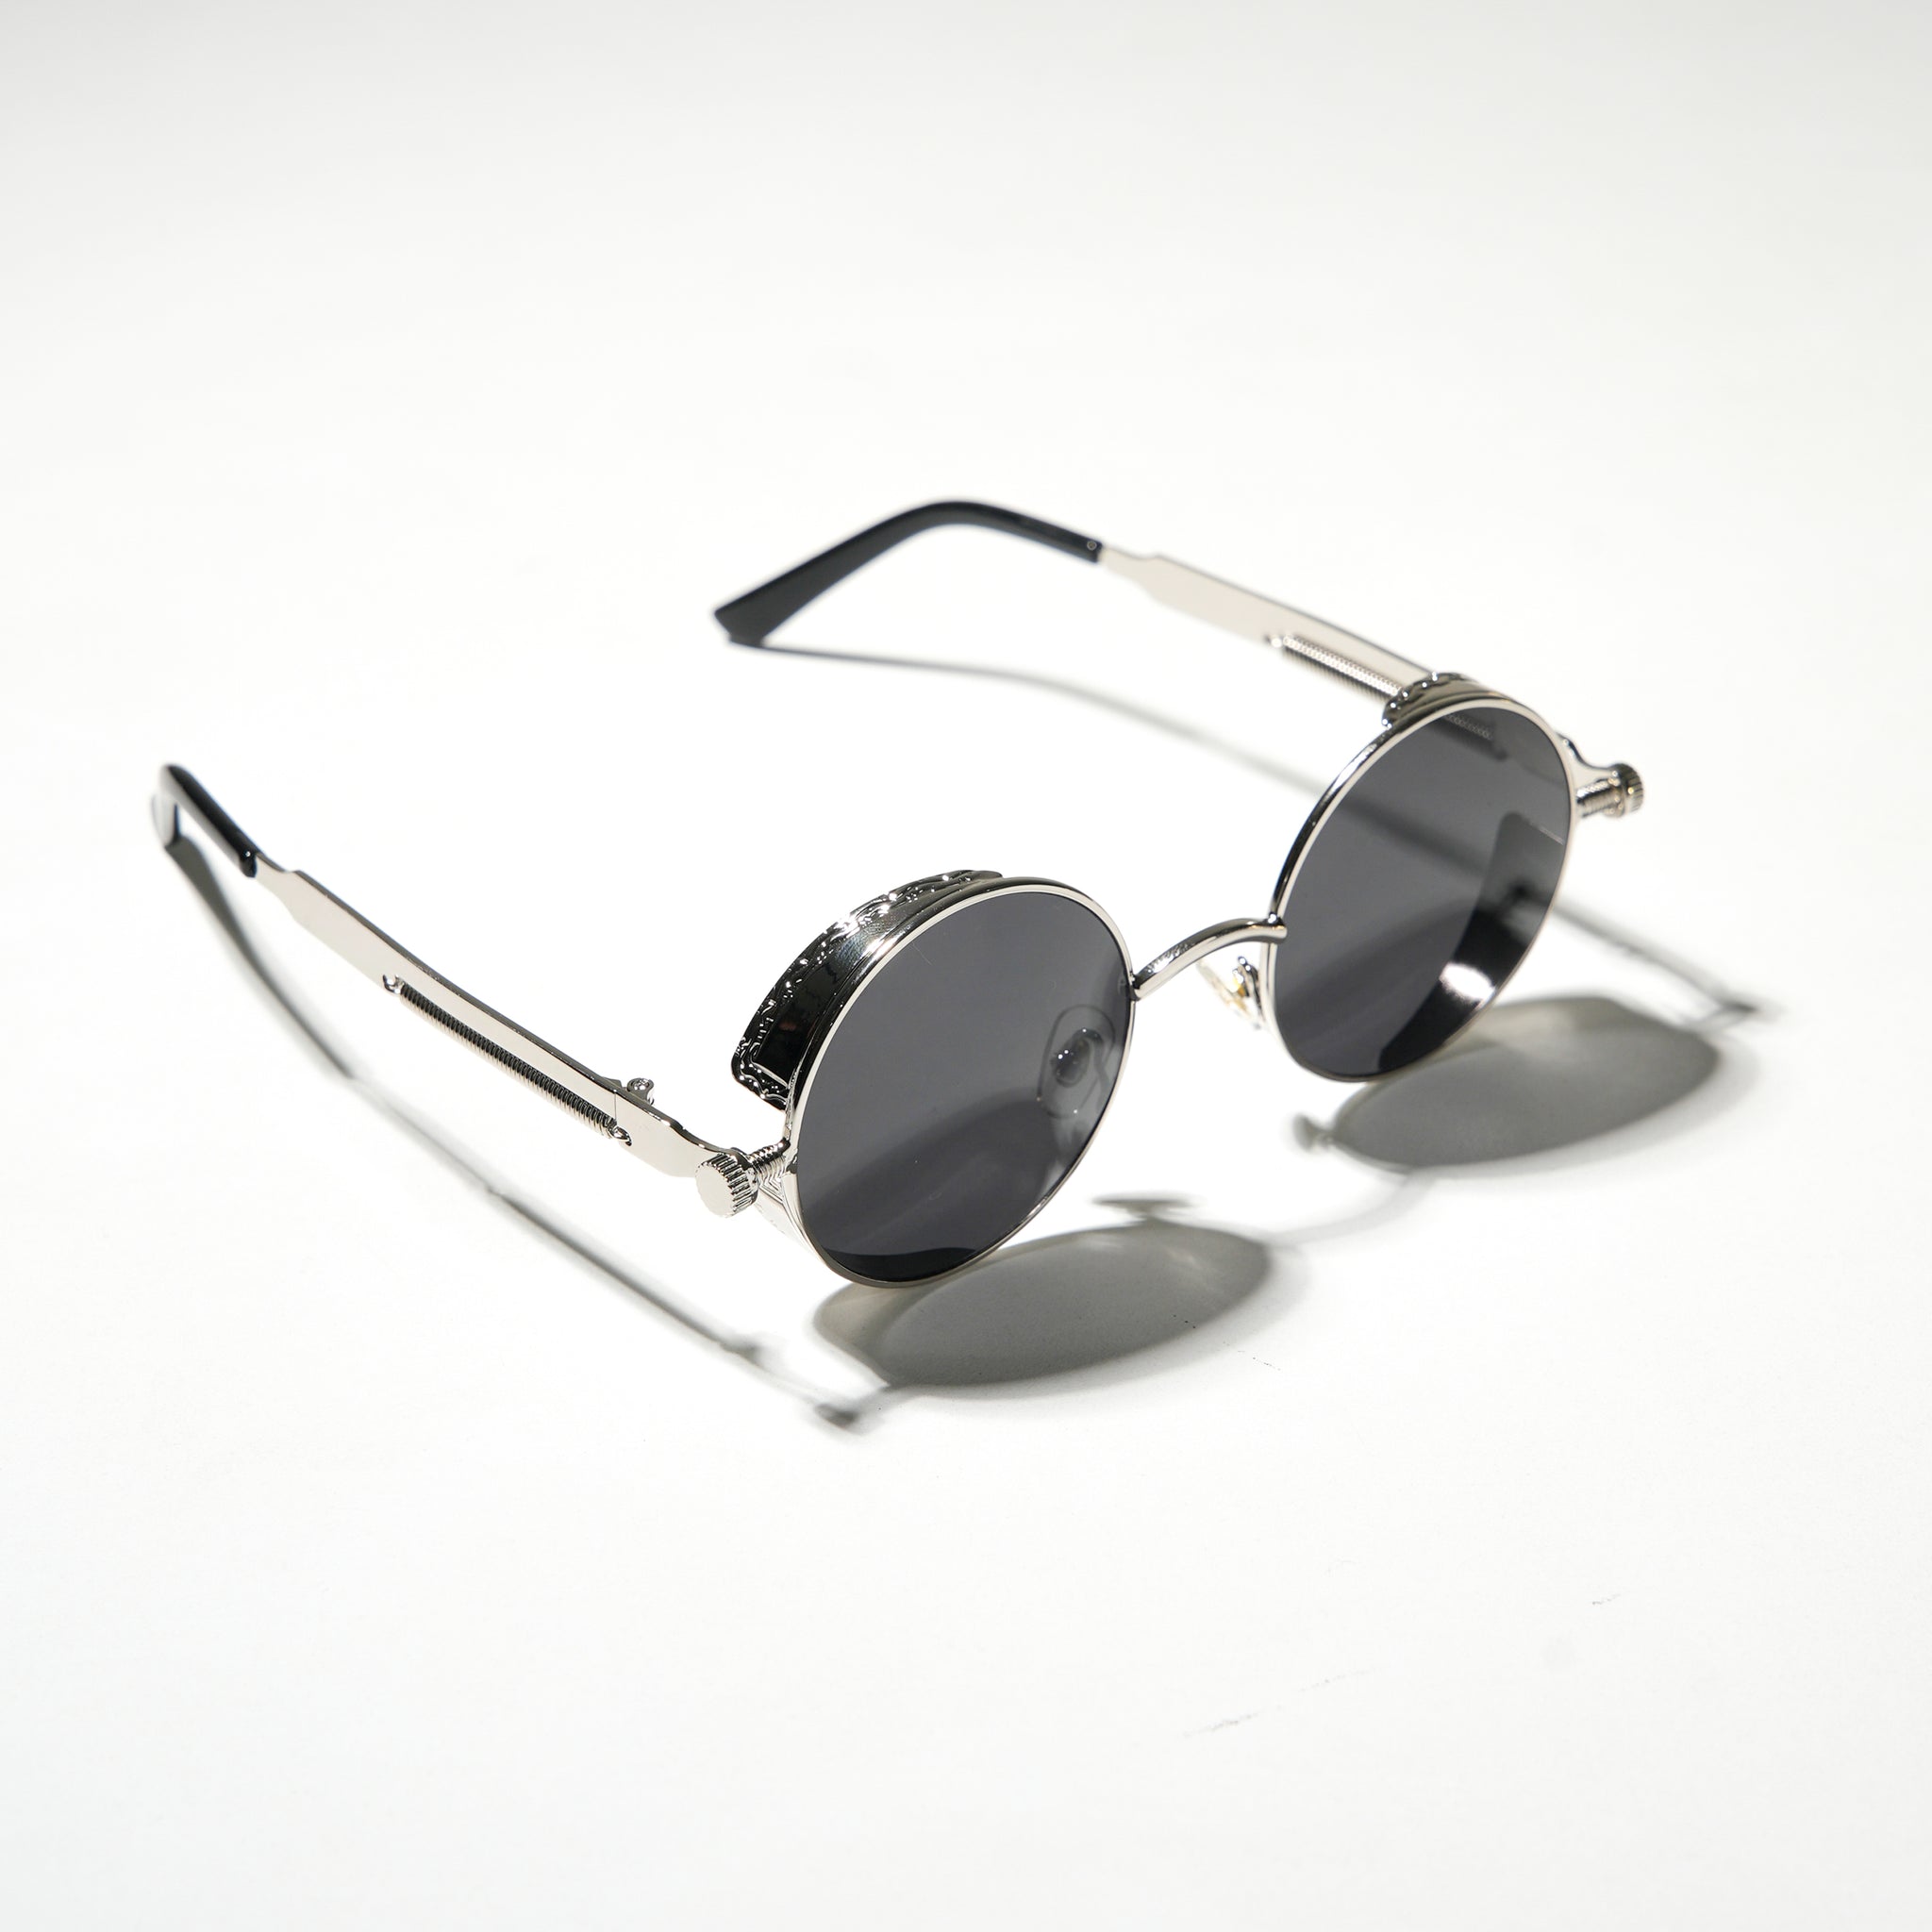 Chokore Retro Polarized Round Sunglasses (Black & Silver)